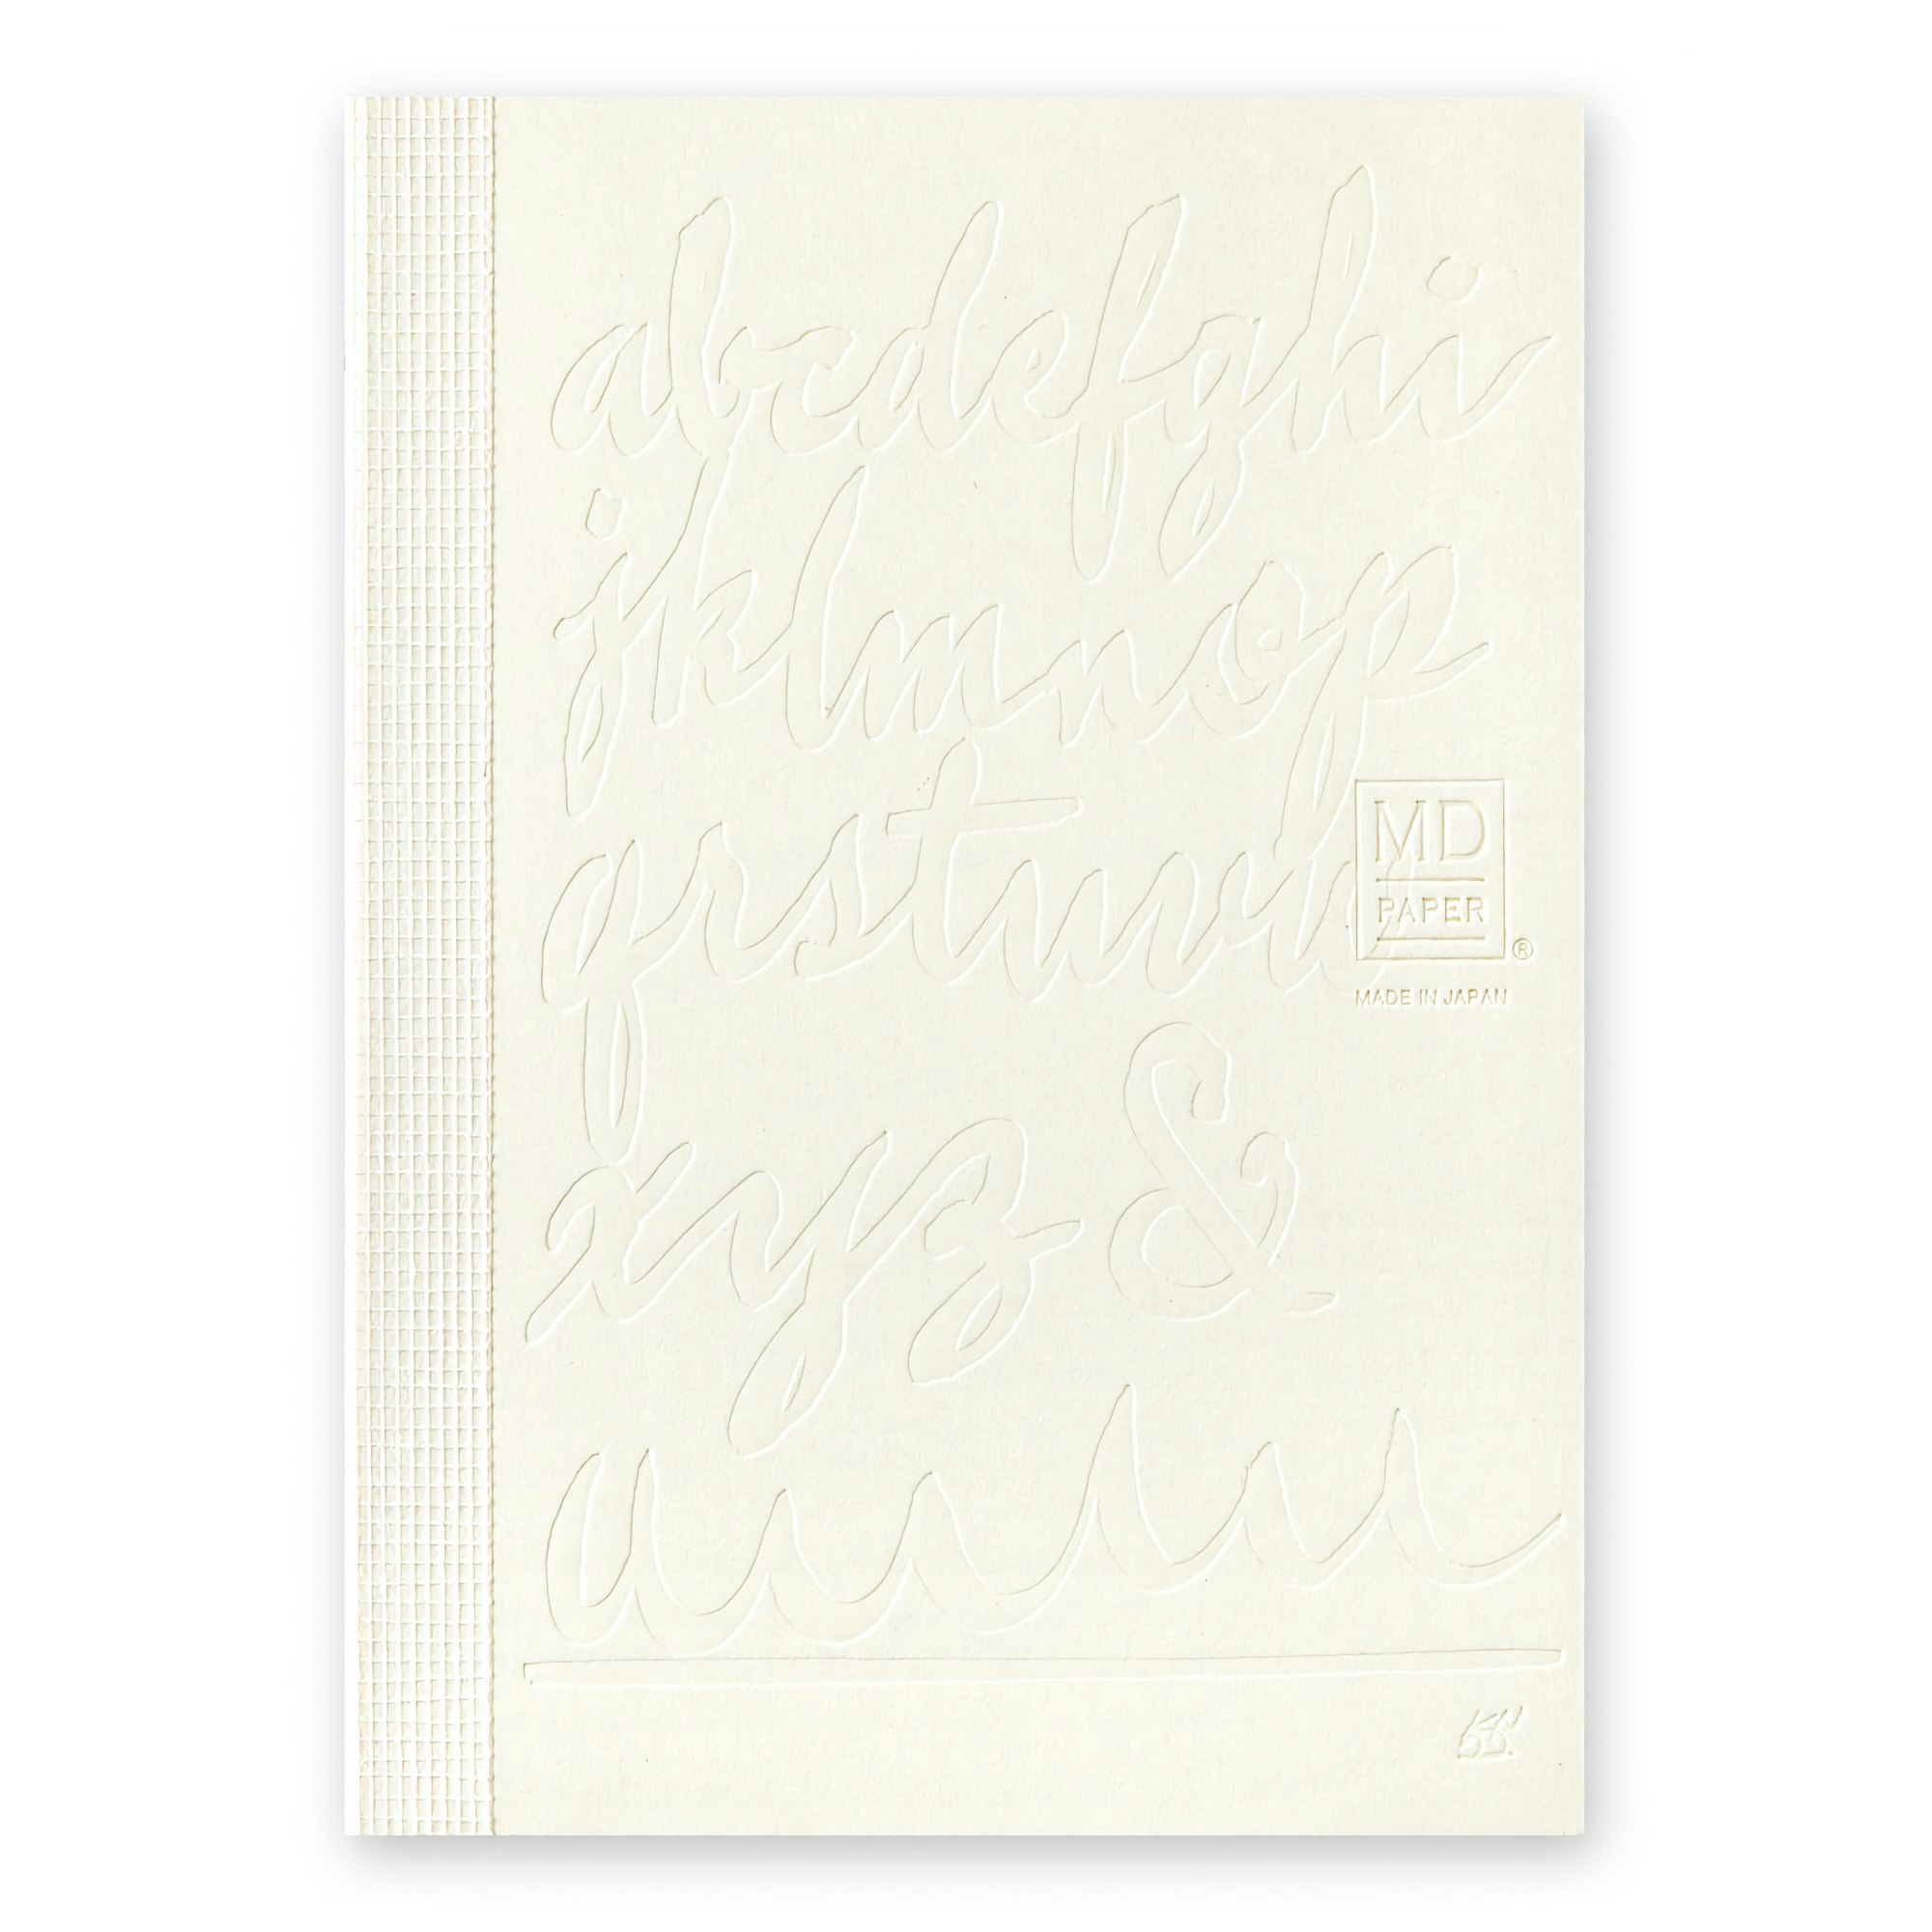 Midori MD Notebook [A6] Blank Artist Collaboration Kenji Nakayama 15th Anniversary [Limited Edition]